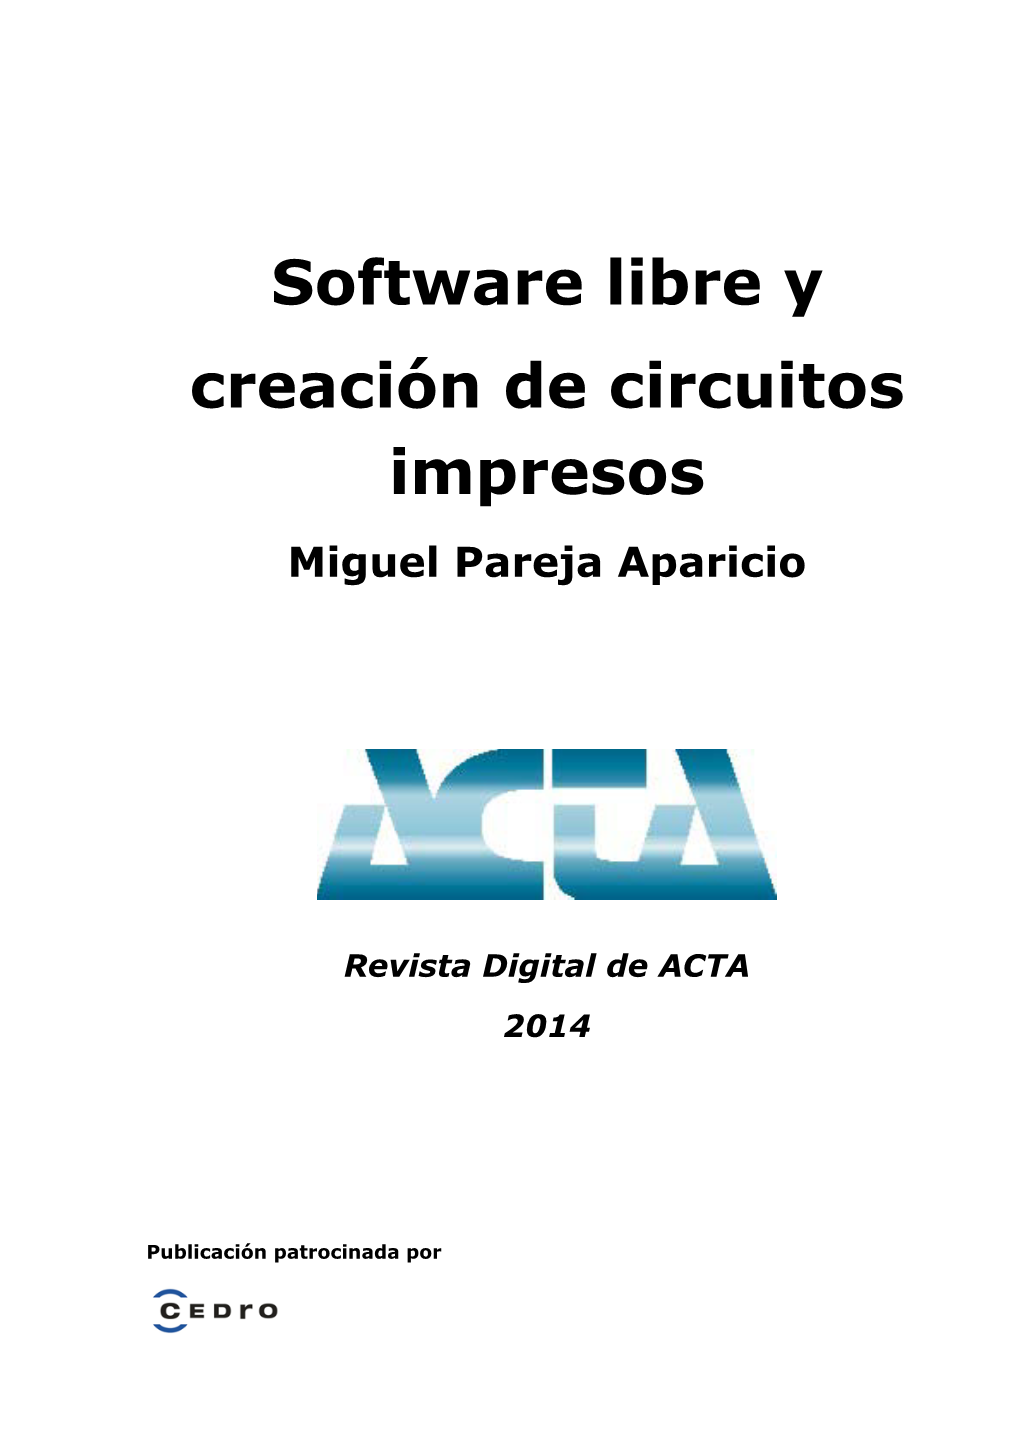 Software Libre Y Creación De Circuitos Impresos Miguel Pareja Aparicio